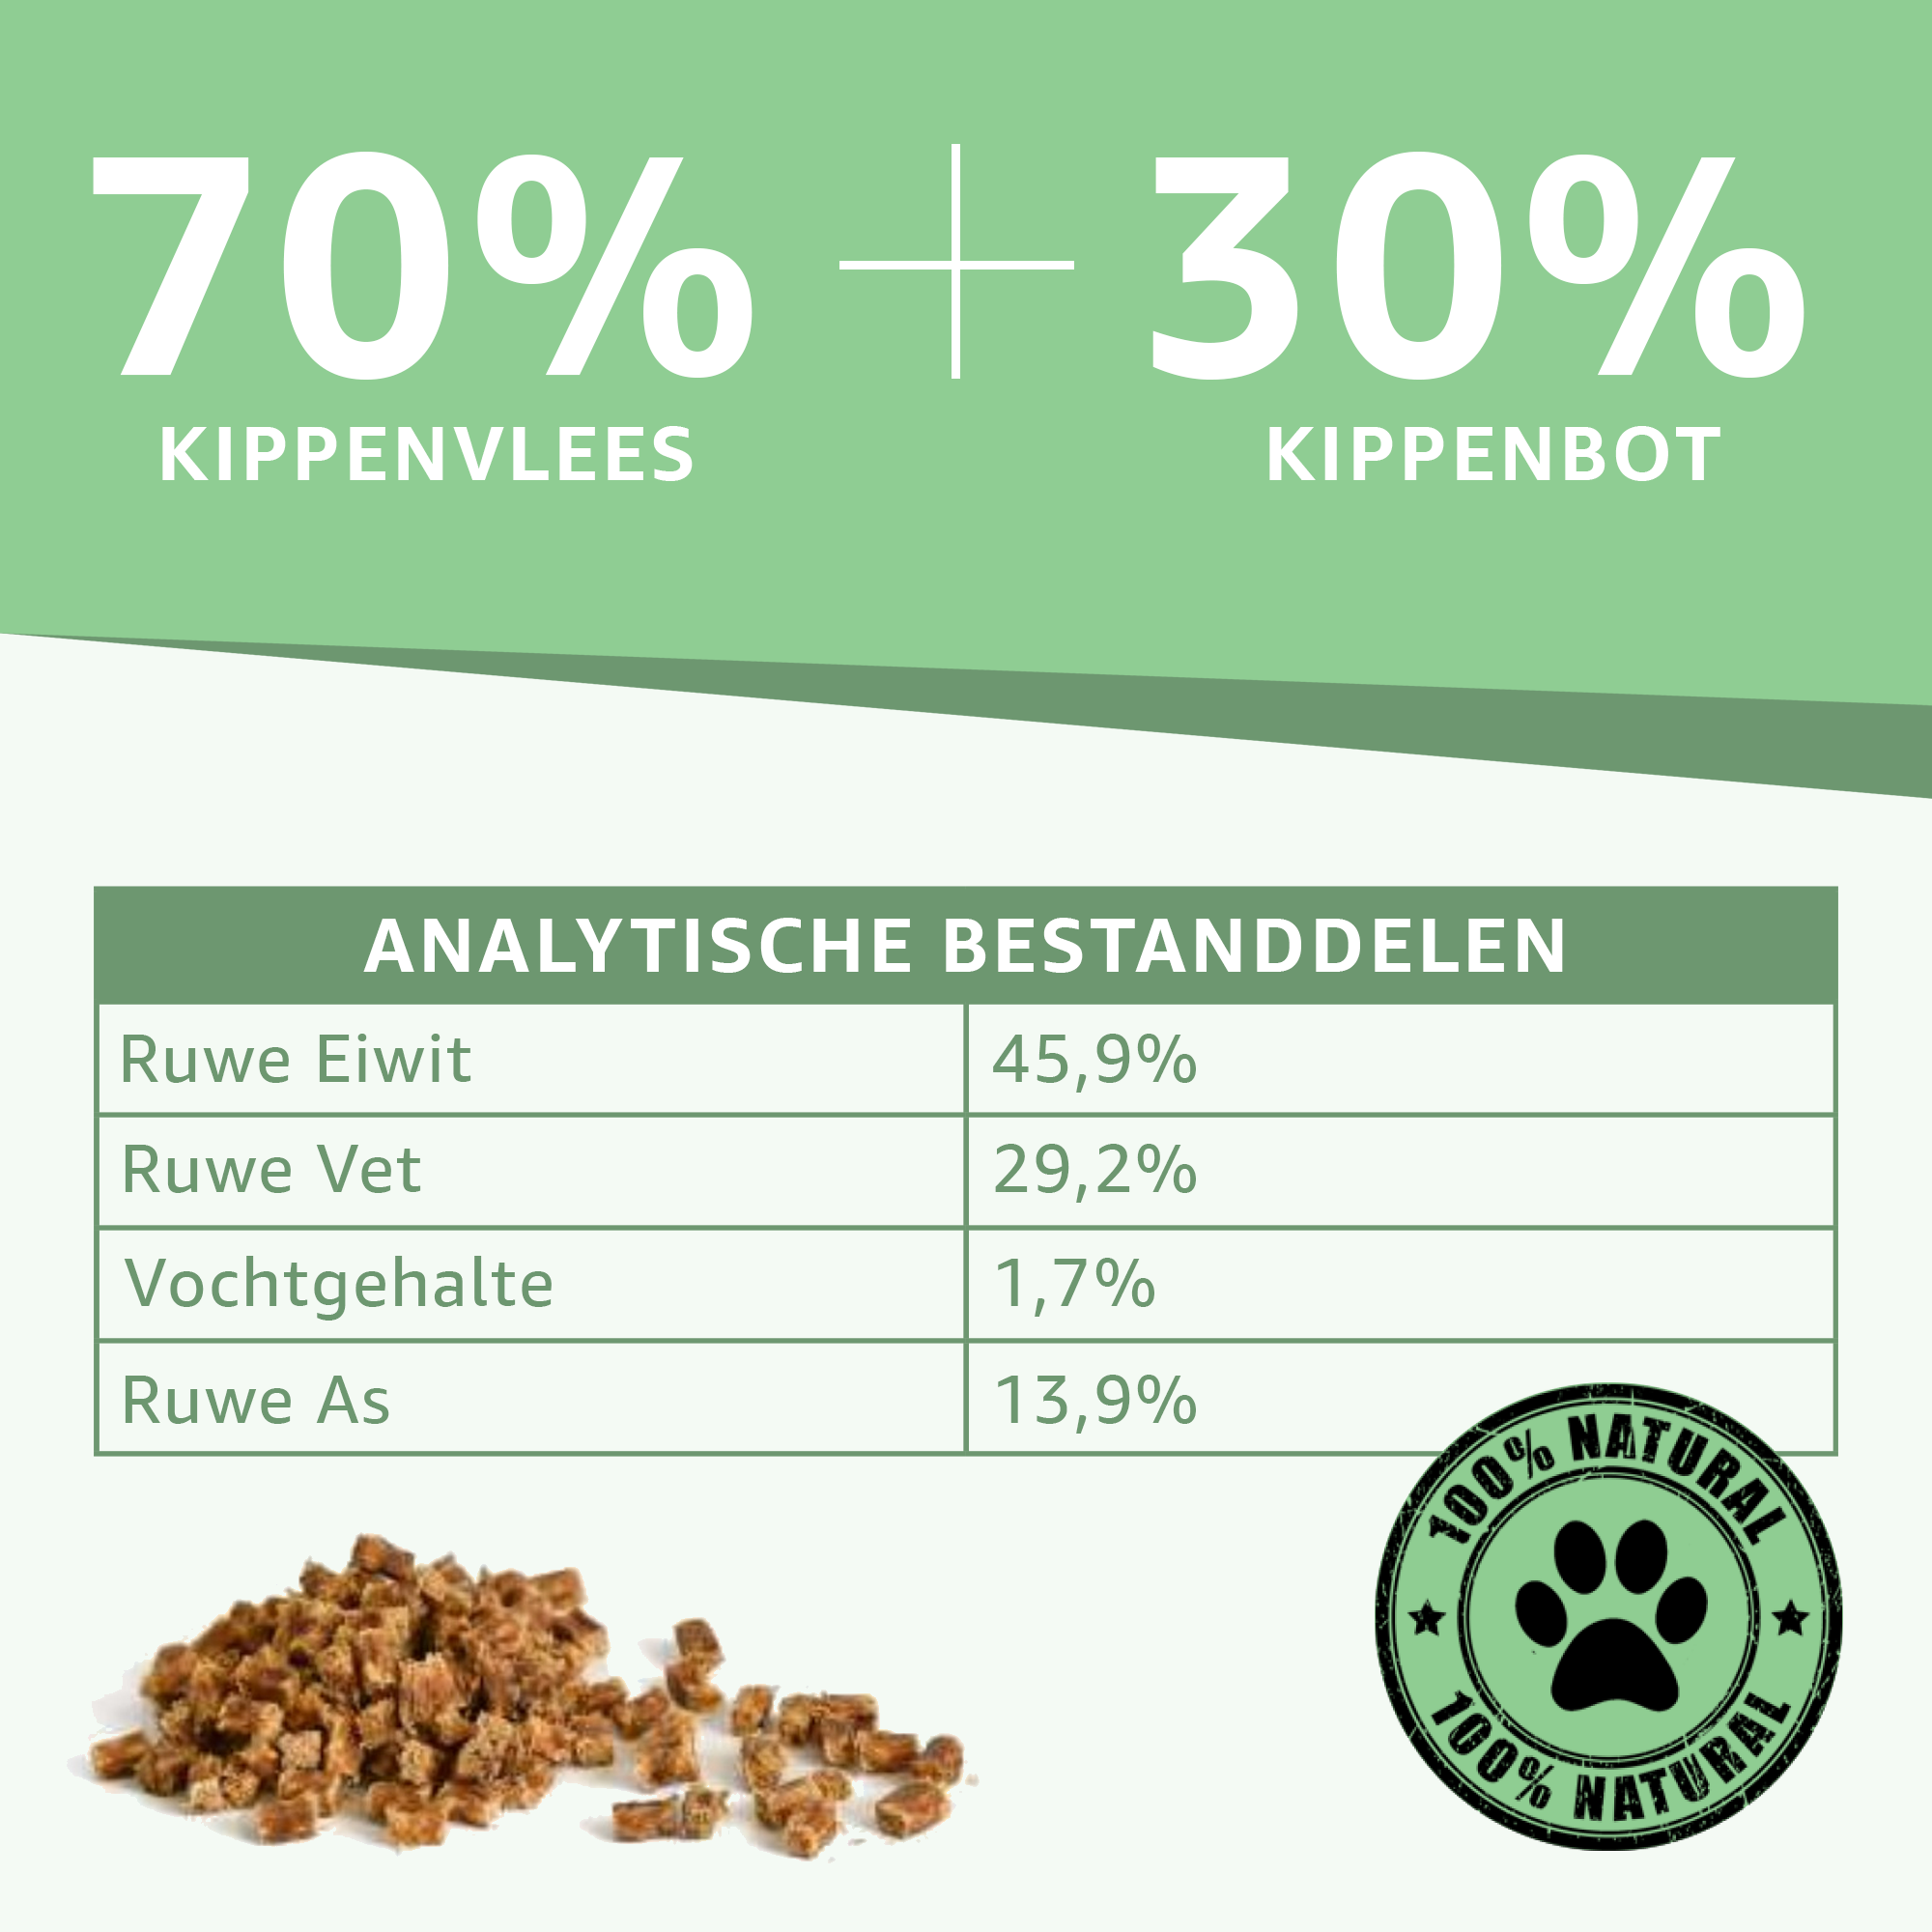 De analytische bestandsdelen en de samenstelling van de natuurlijke hondensnack, kip trainers.